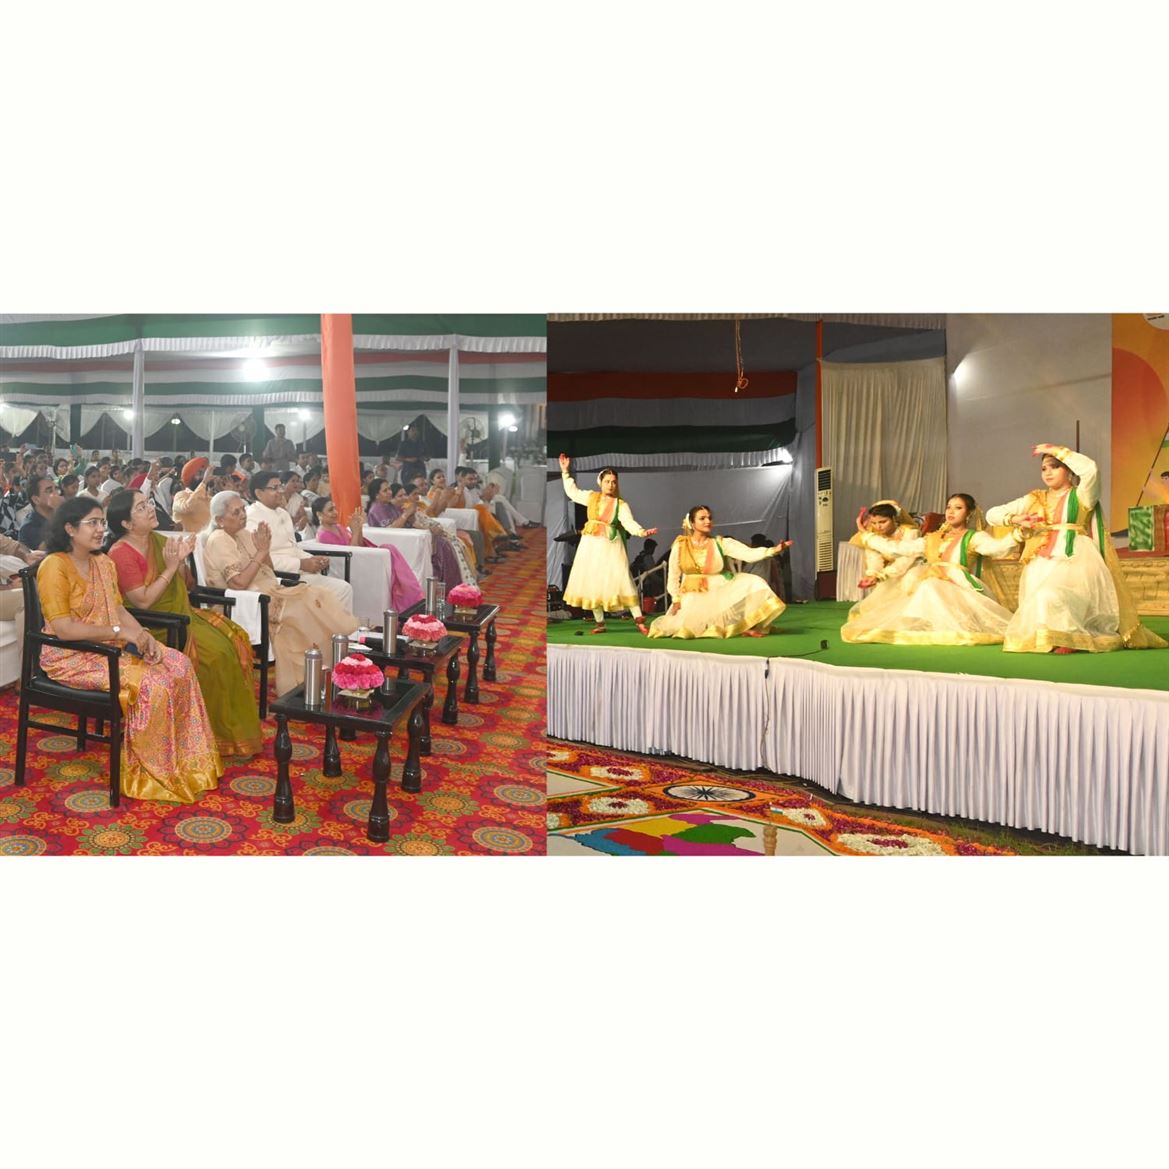 Cultural programs were organized at Raj Bhavan on the occasion of Independence Day/स्वतंत्रता दिवस पर राजभवन में आयोजित हुई सांस्कृतिक कार्यक्रमों की संध्या